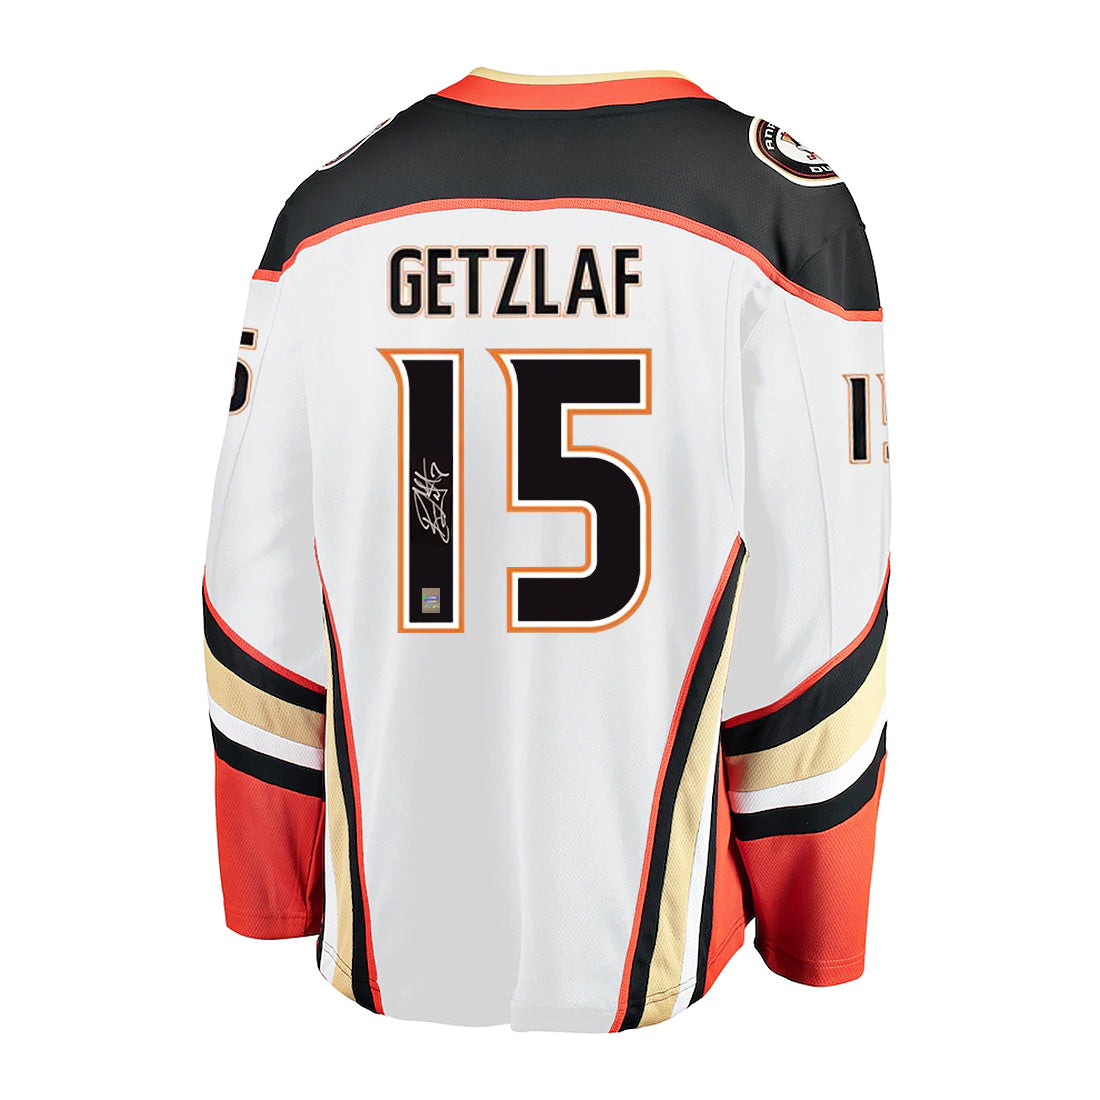 Ryan Getzlaf Memorabilia, Ryan Getzlaf Collectibles, NHL Ryan Getzlaf Signed  Gear